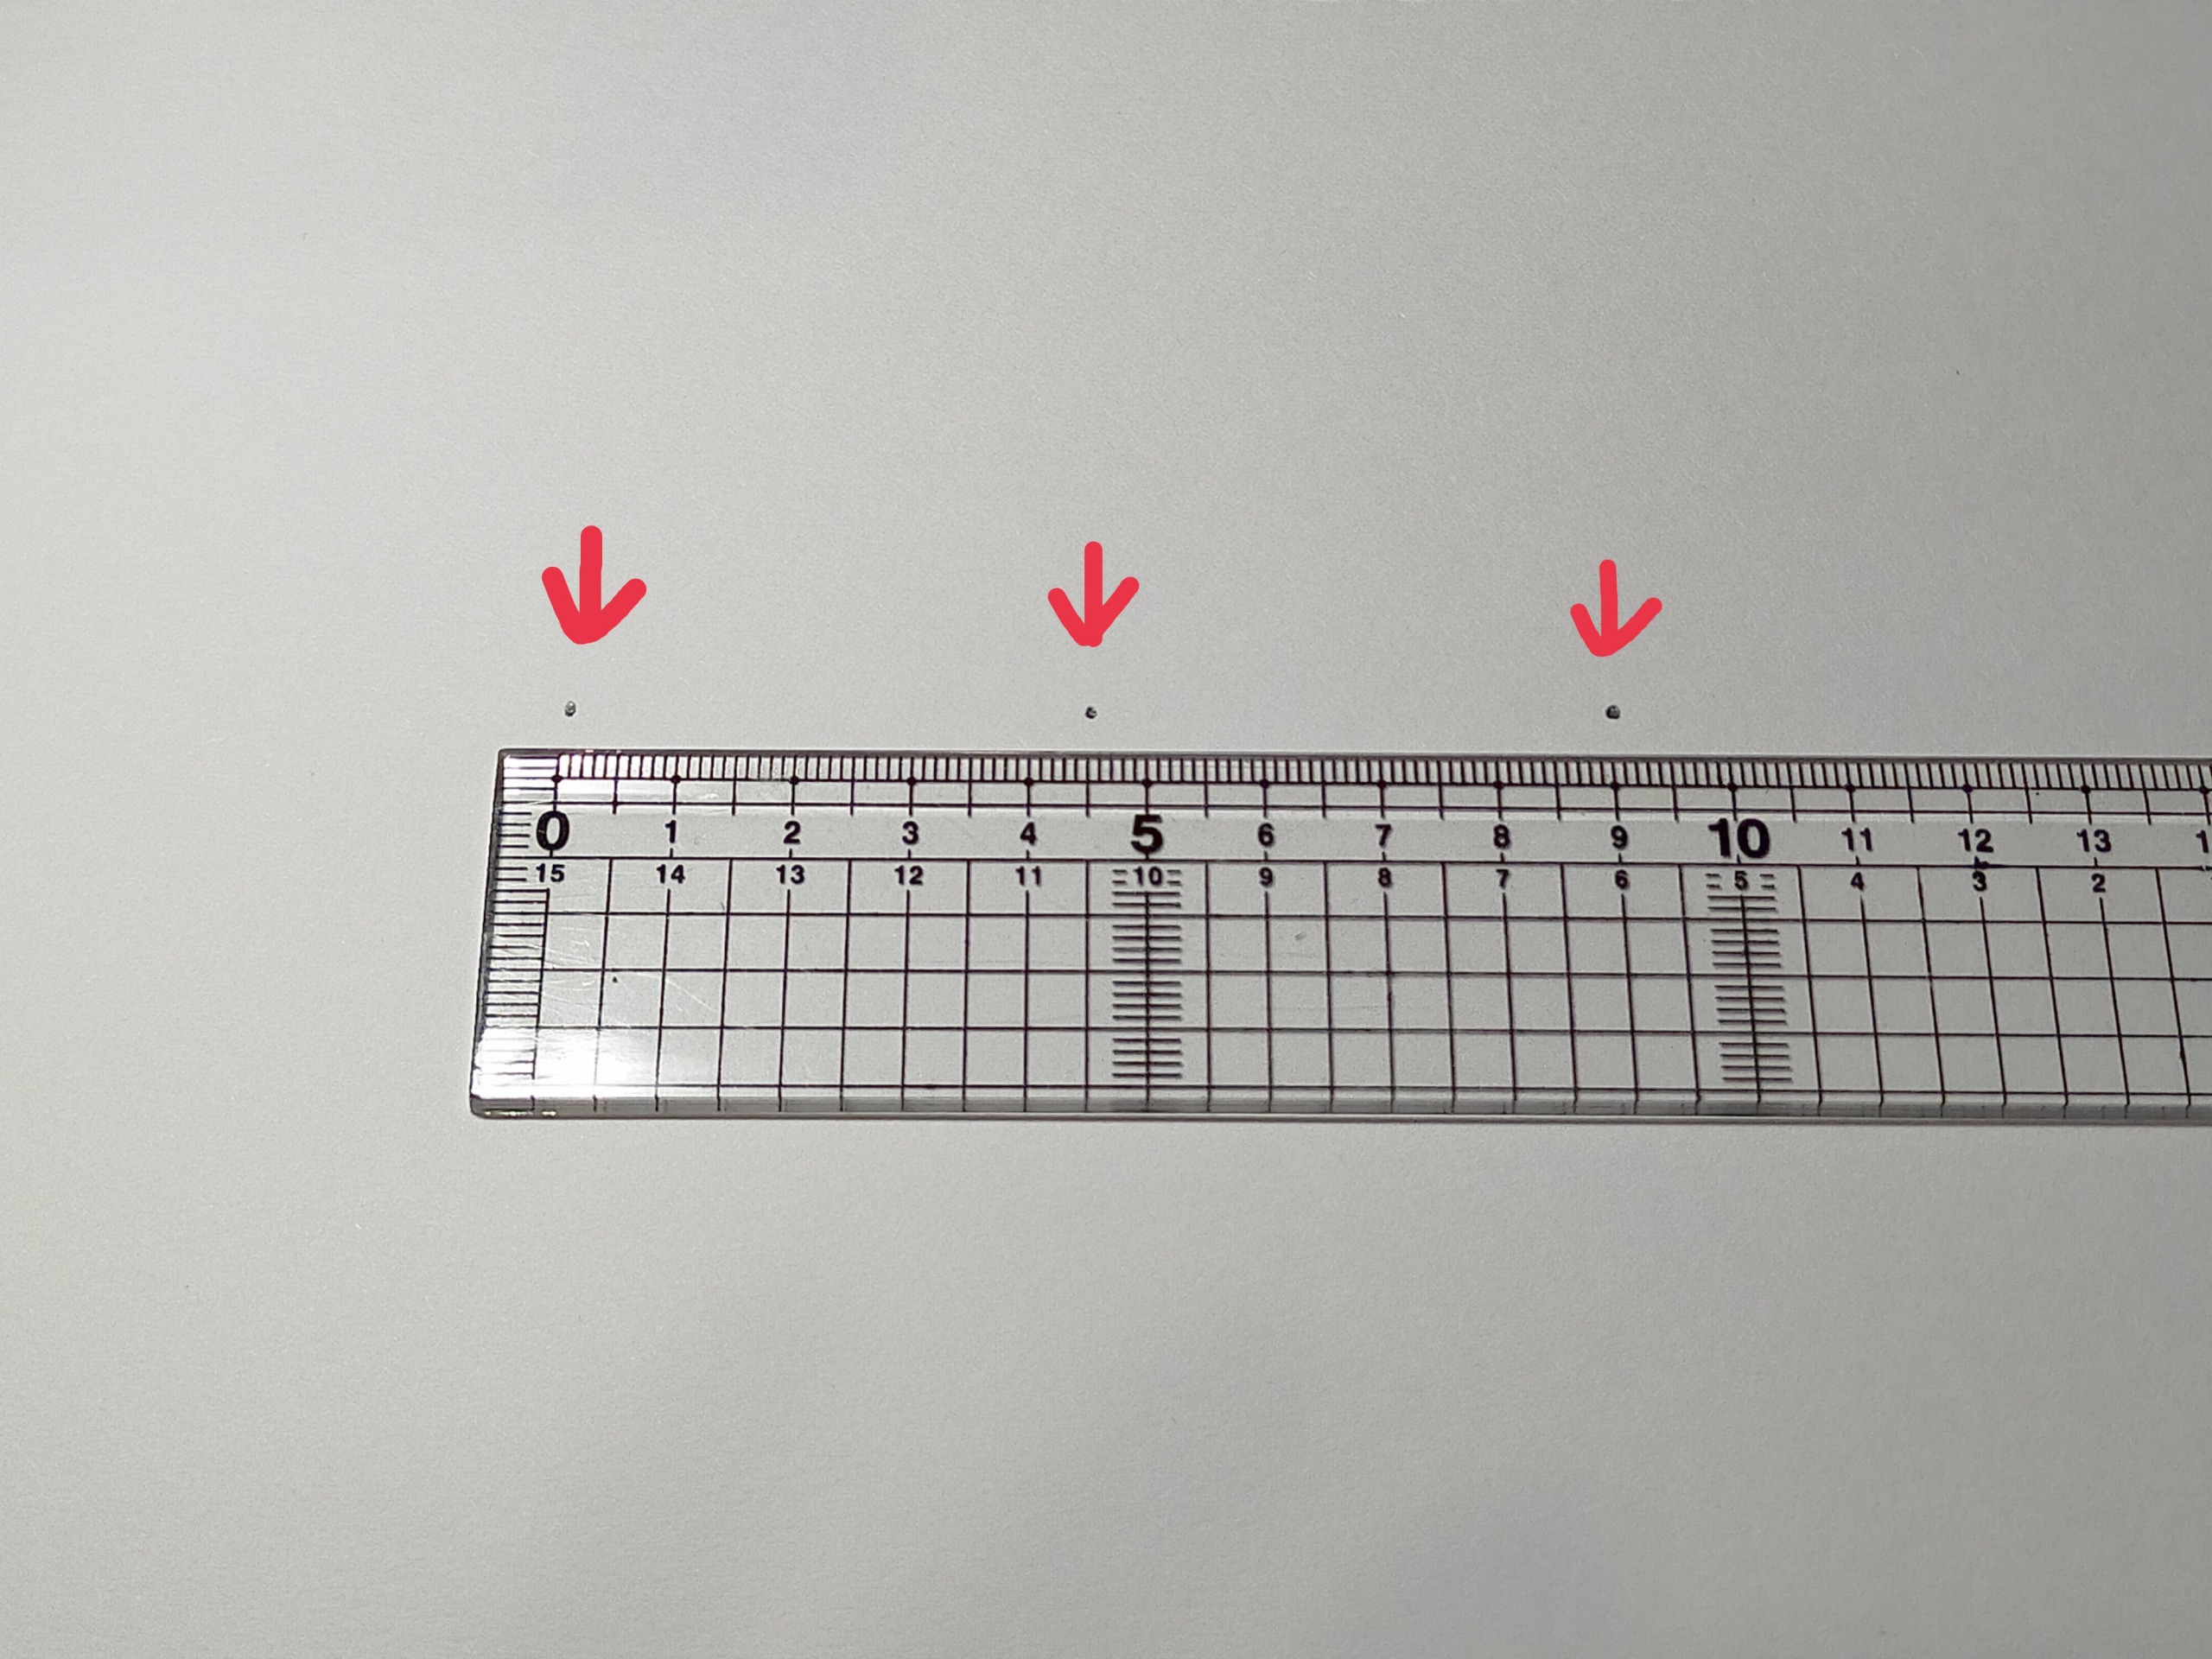 画用紙に0cm、9cmの位置に点を描く。 0cm～9cmの中点4.5cmの位置に点を描く。